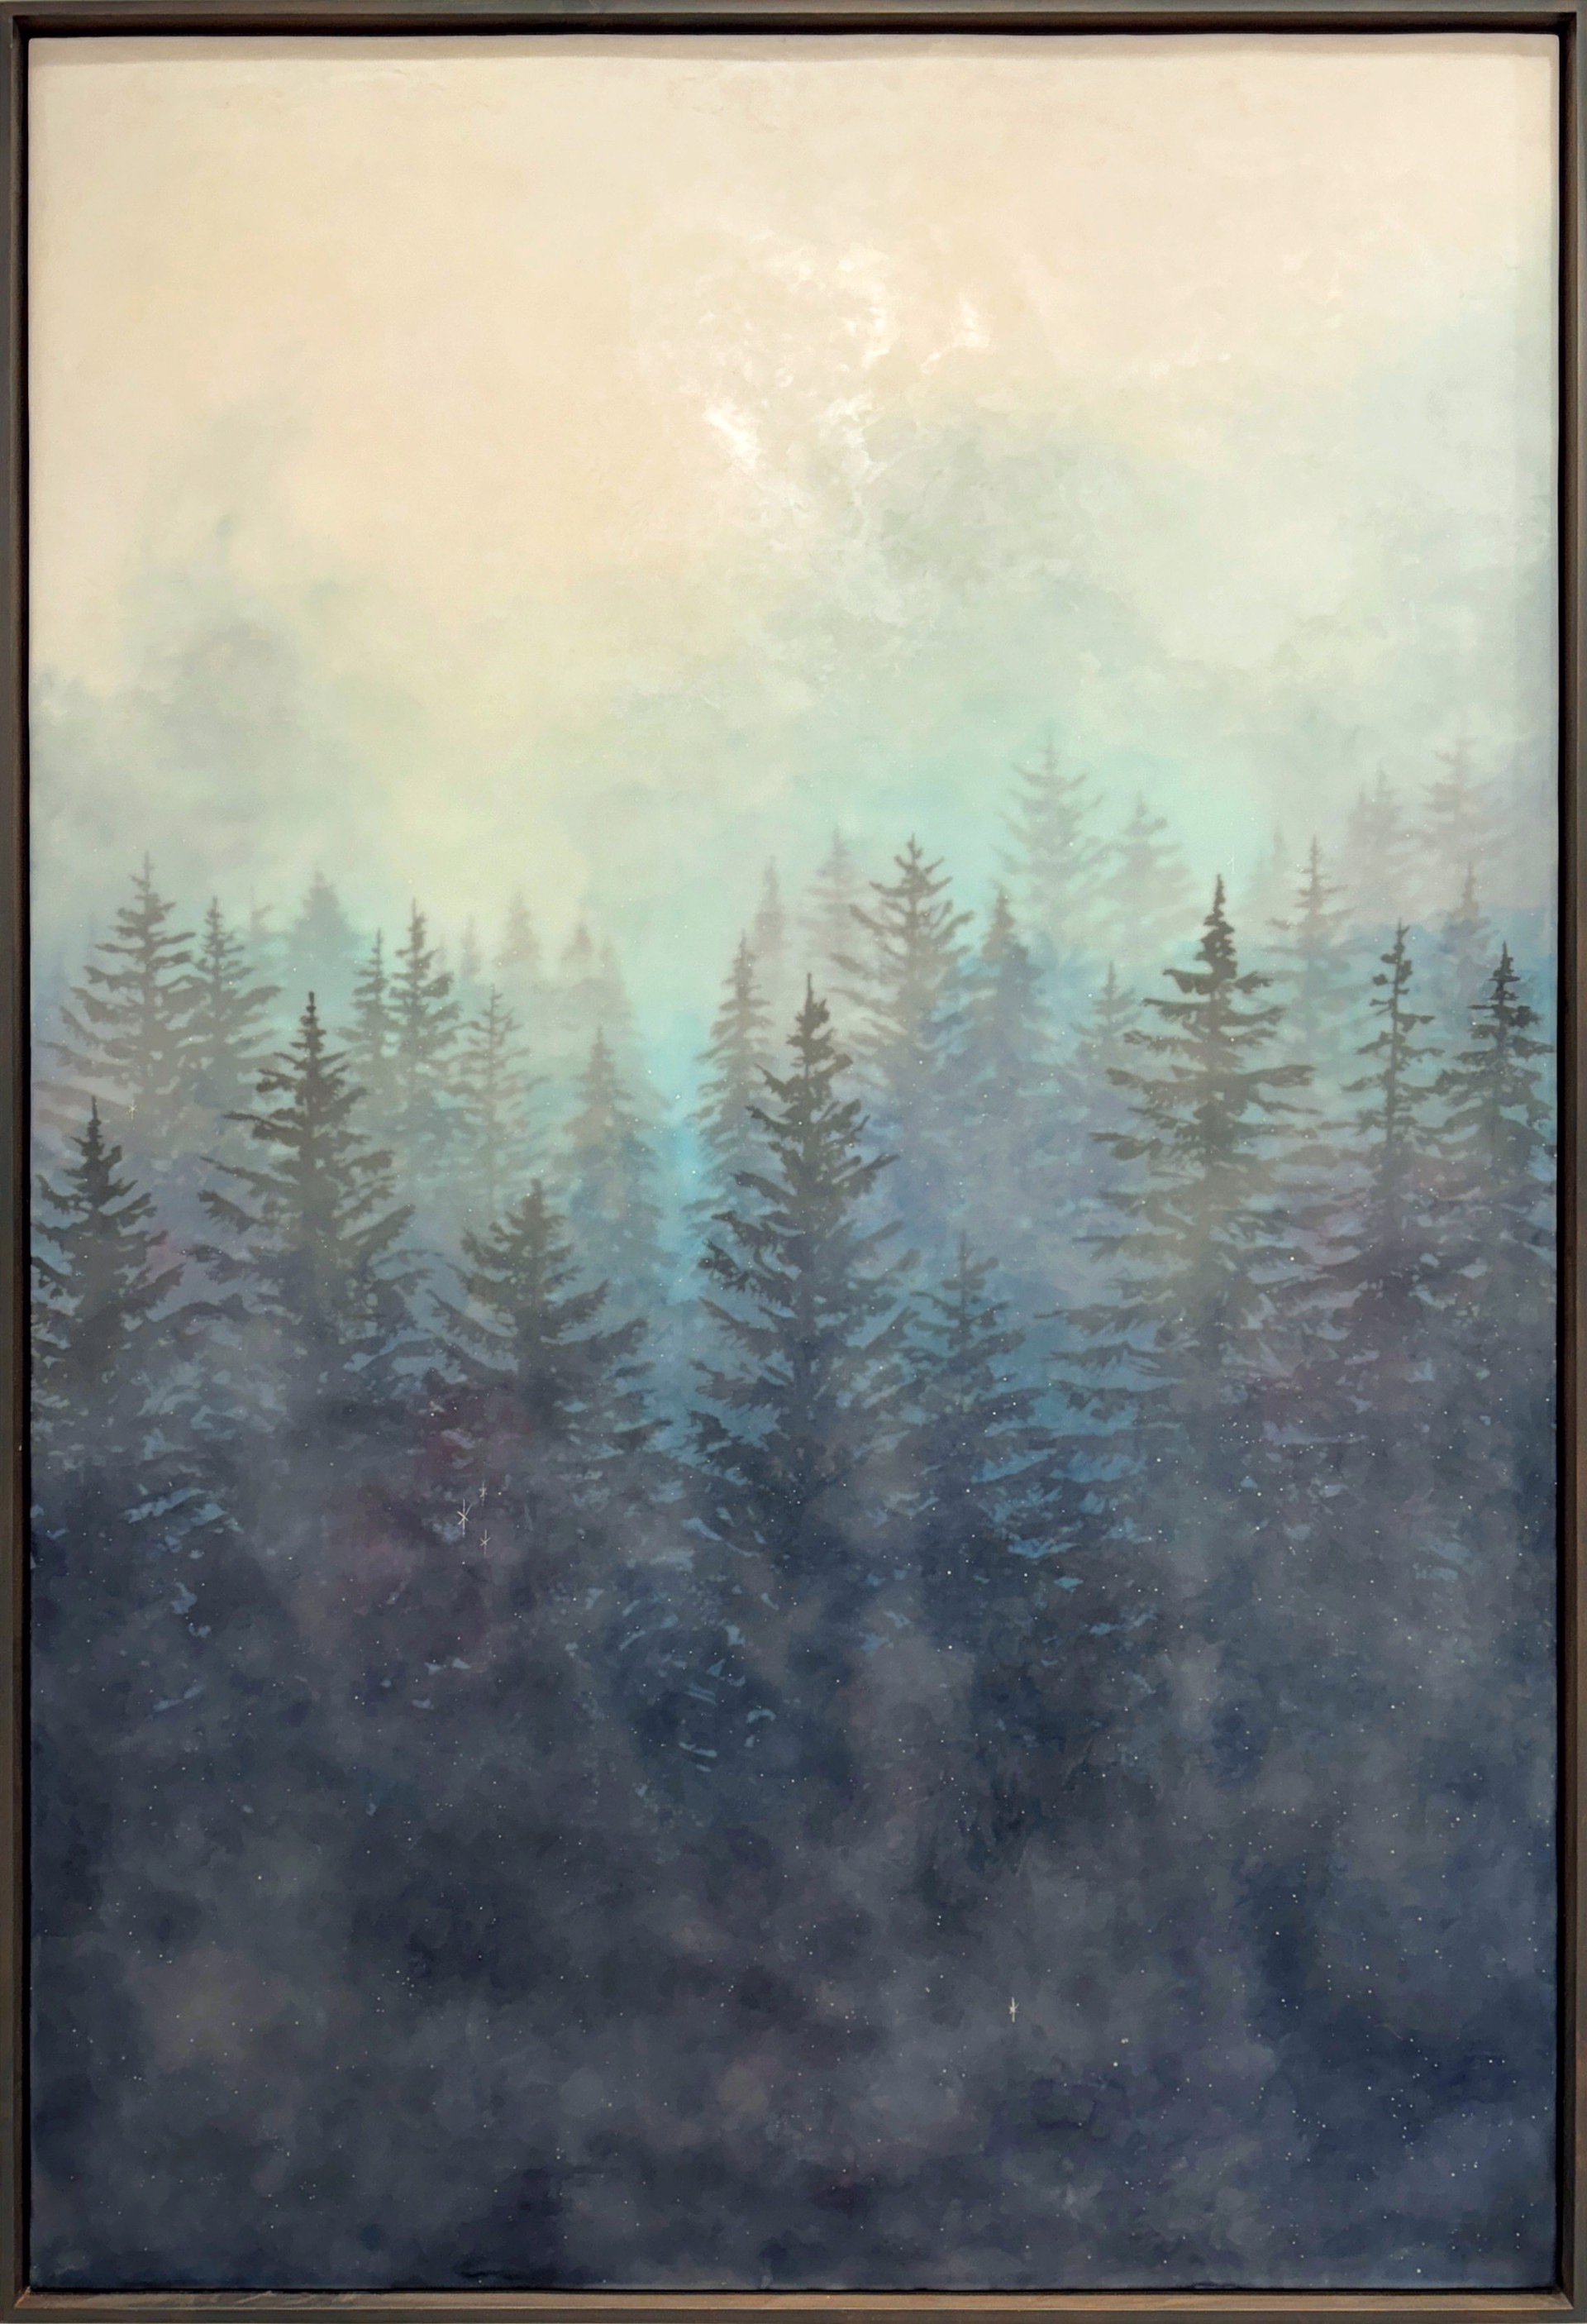 Original Encaustic Landscape Painting By Bridgette Meinhold Featuring Pine Trees